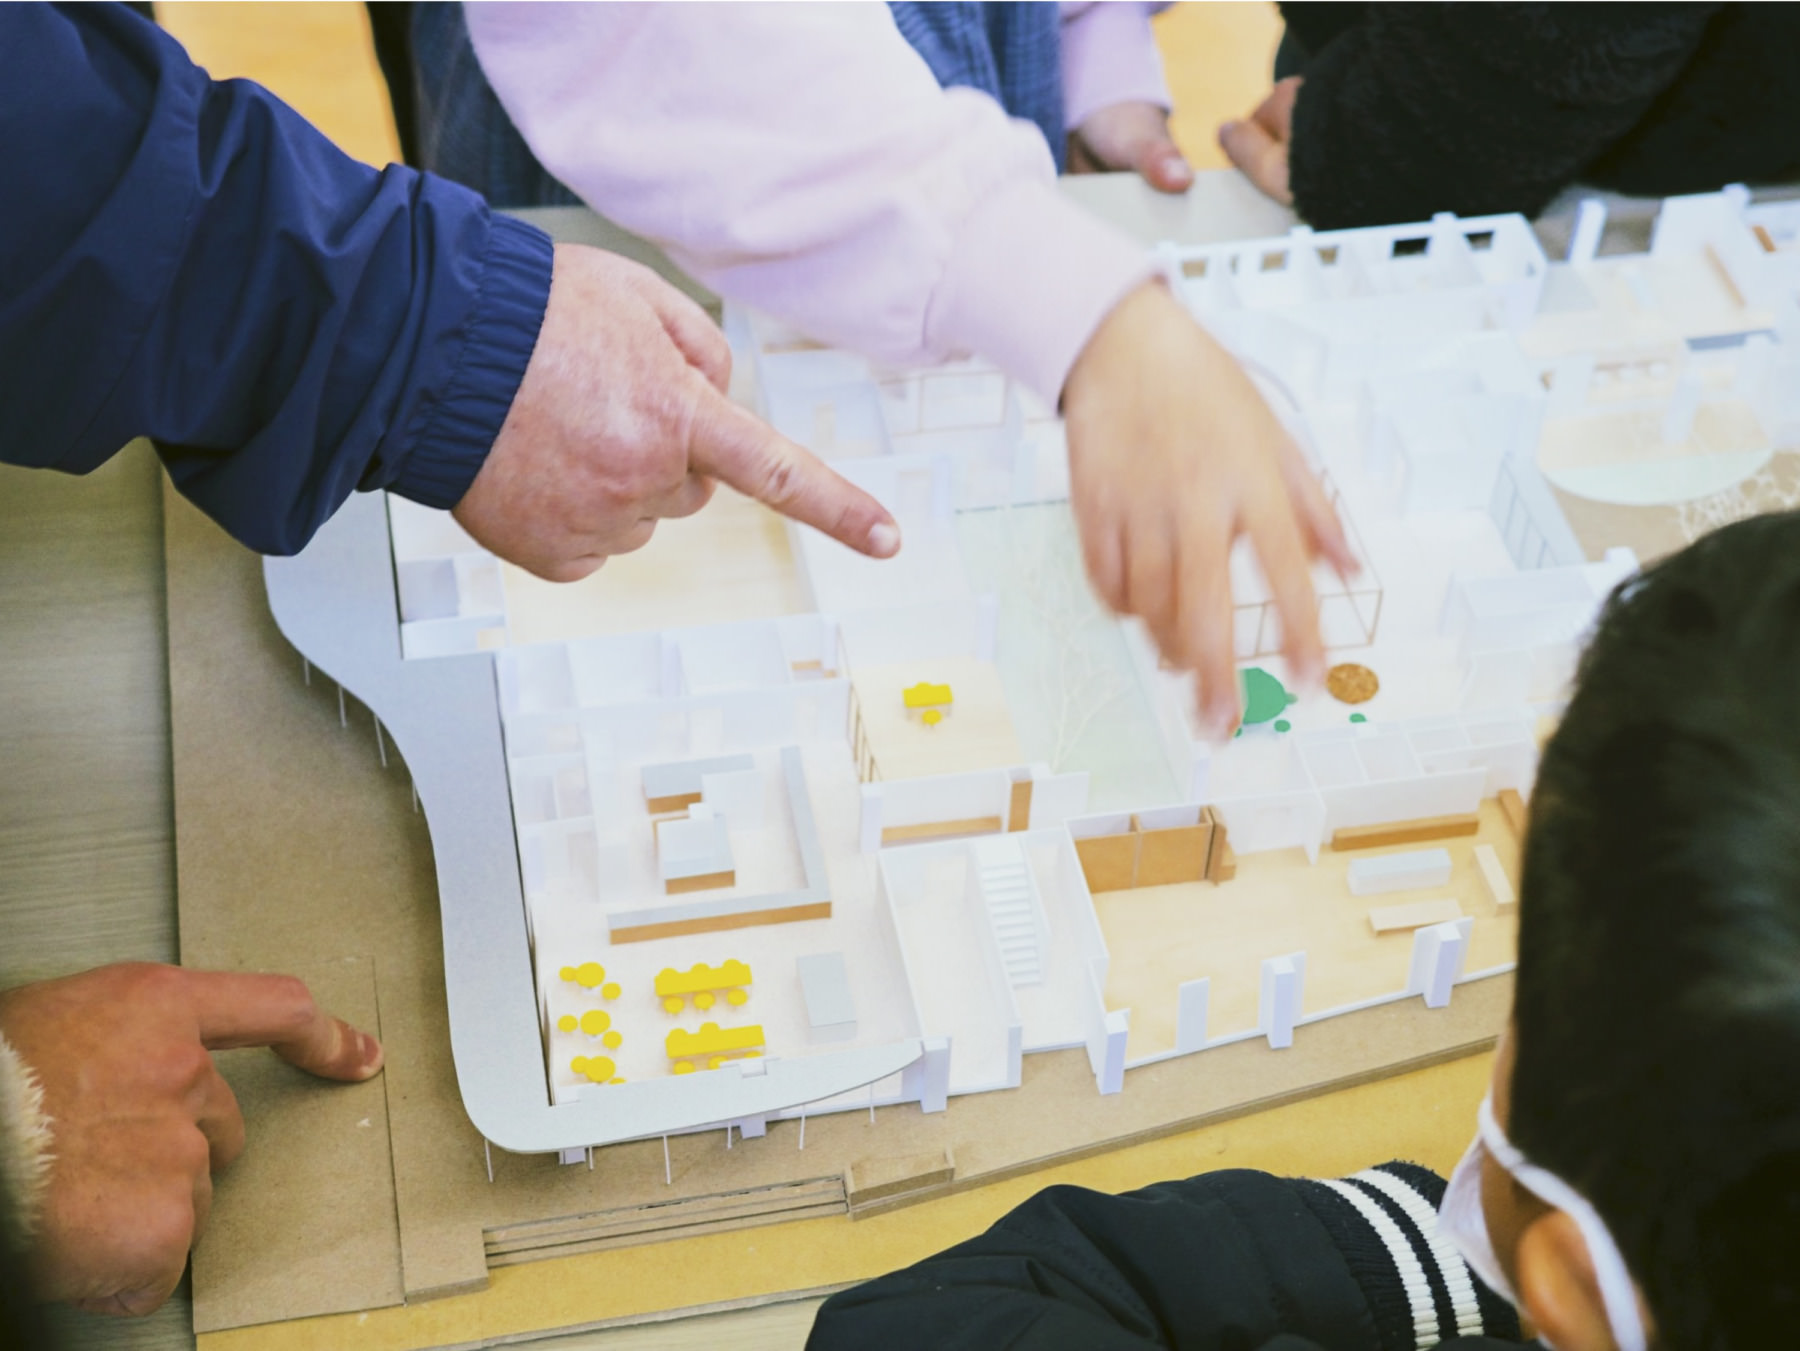 児童養護施設森の木 大規模施設改修案プロジェクト。矢橋徹建築事務所の模型を使って、子どもたちとワークショップ